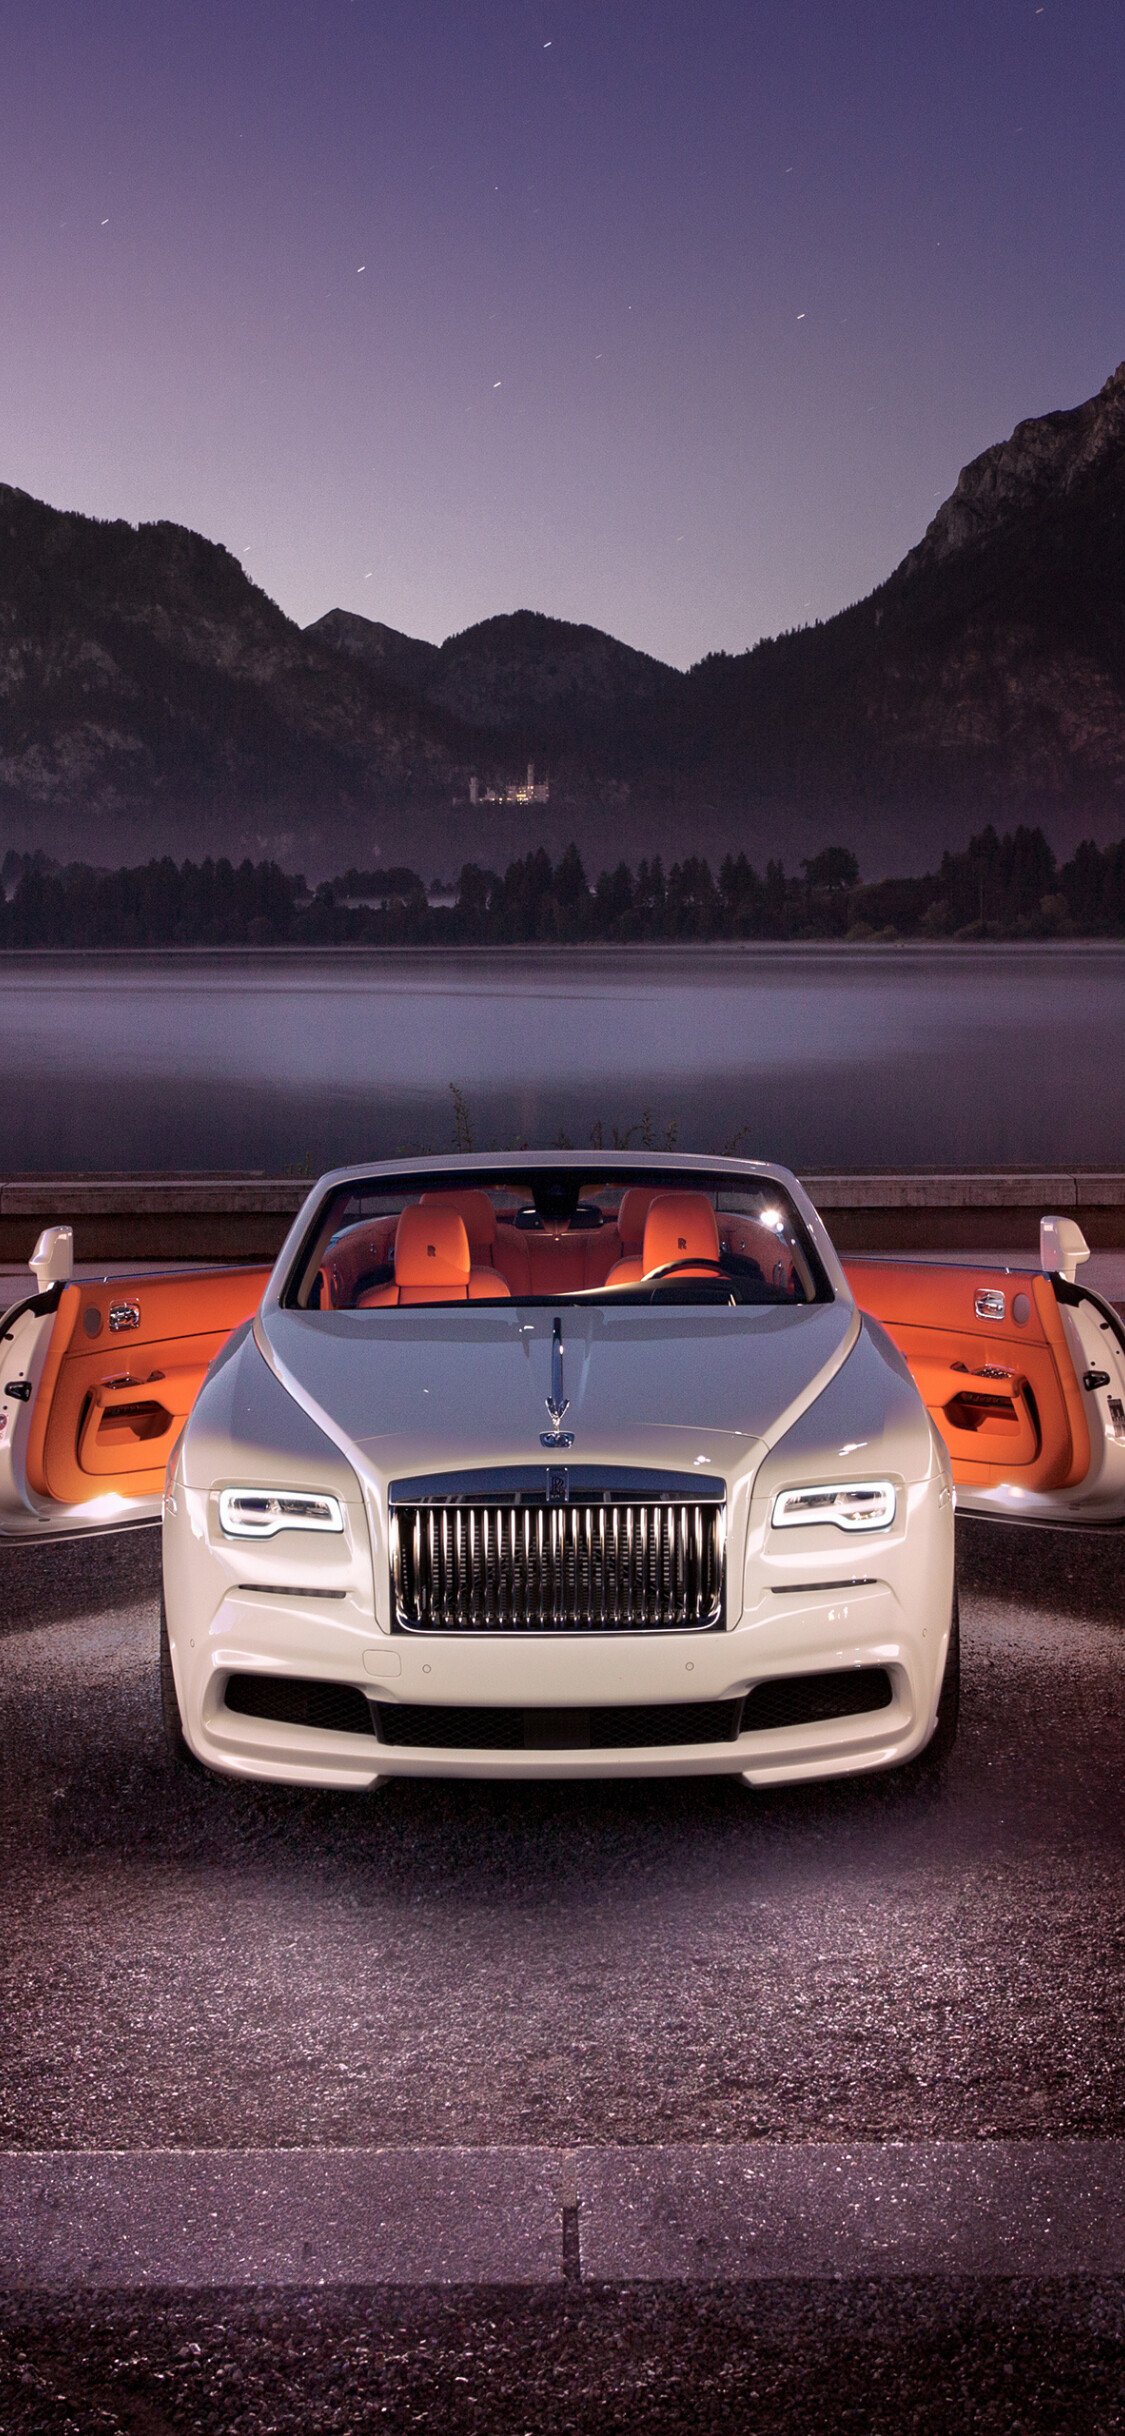 Rolls-Royce: Model Dawn, A convertible luxury grand tourer. 1130x2440 HD Wallpaper.